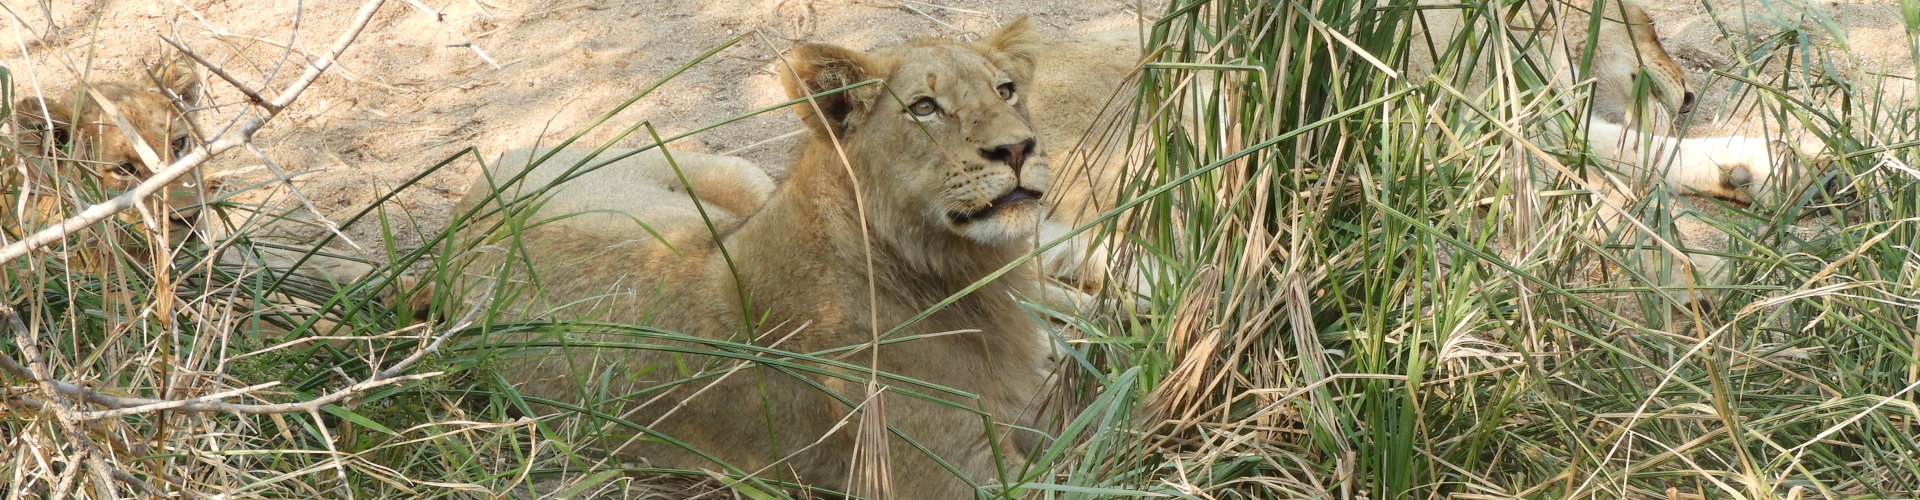 leeuwen safari zuid-afrika